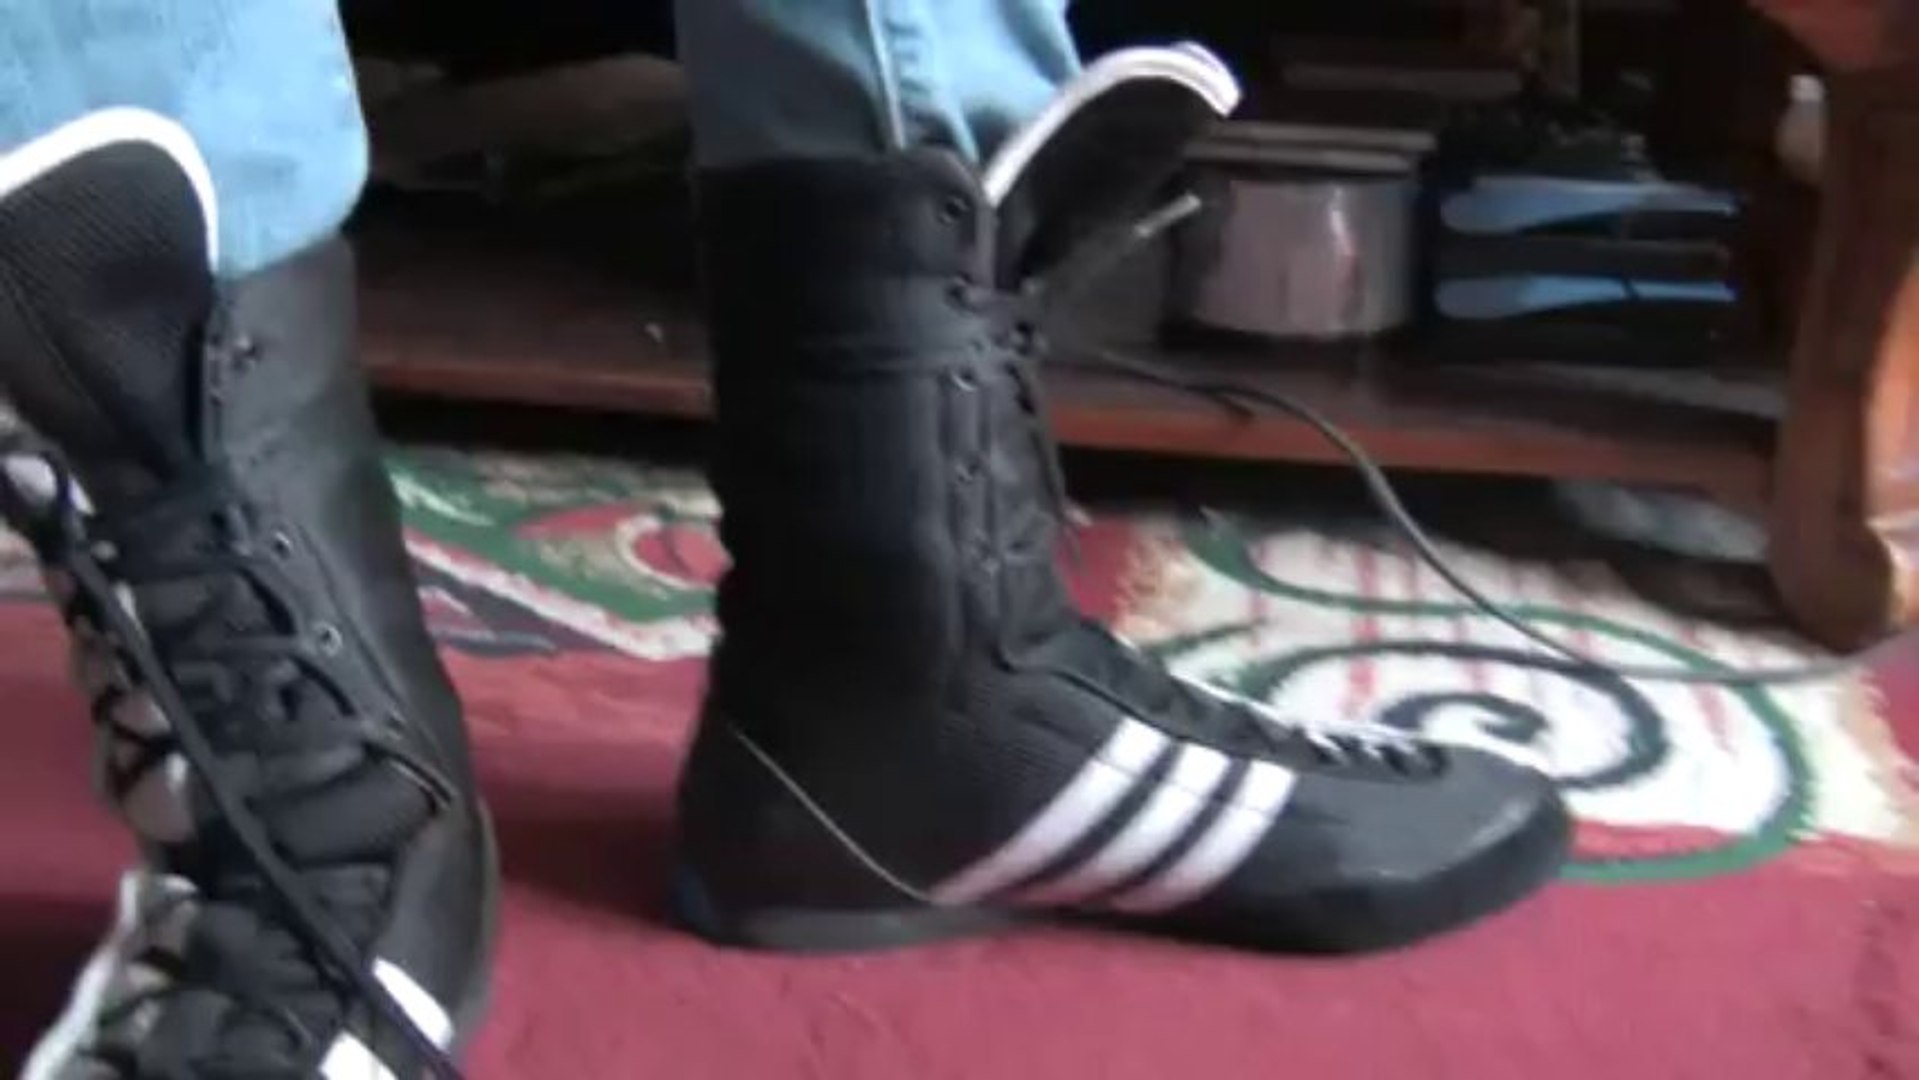 Adistar boxing boots - video